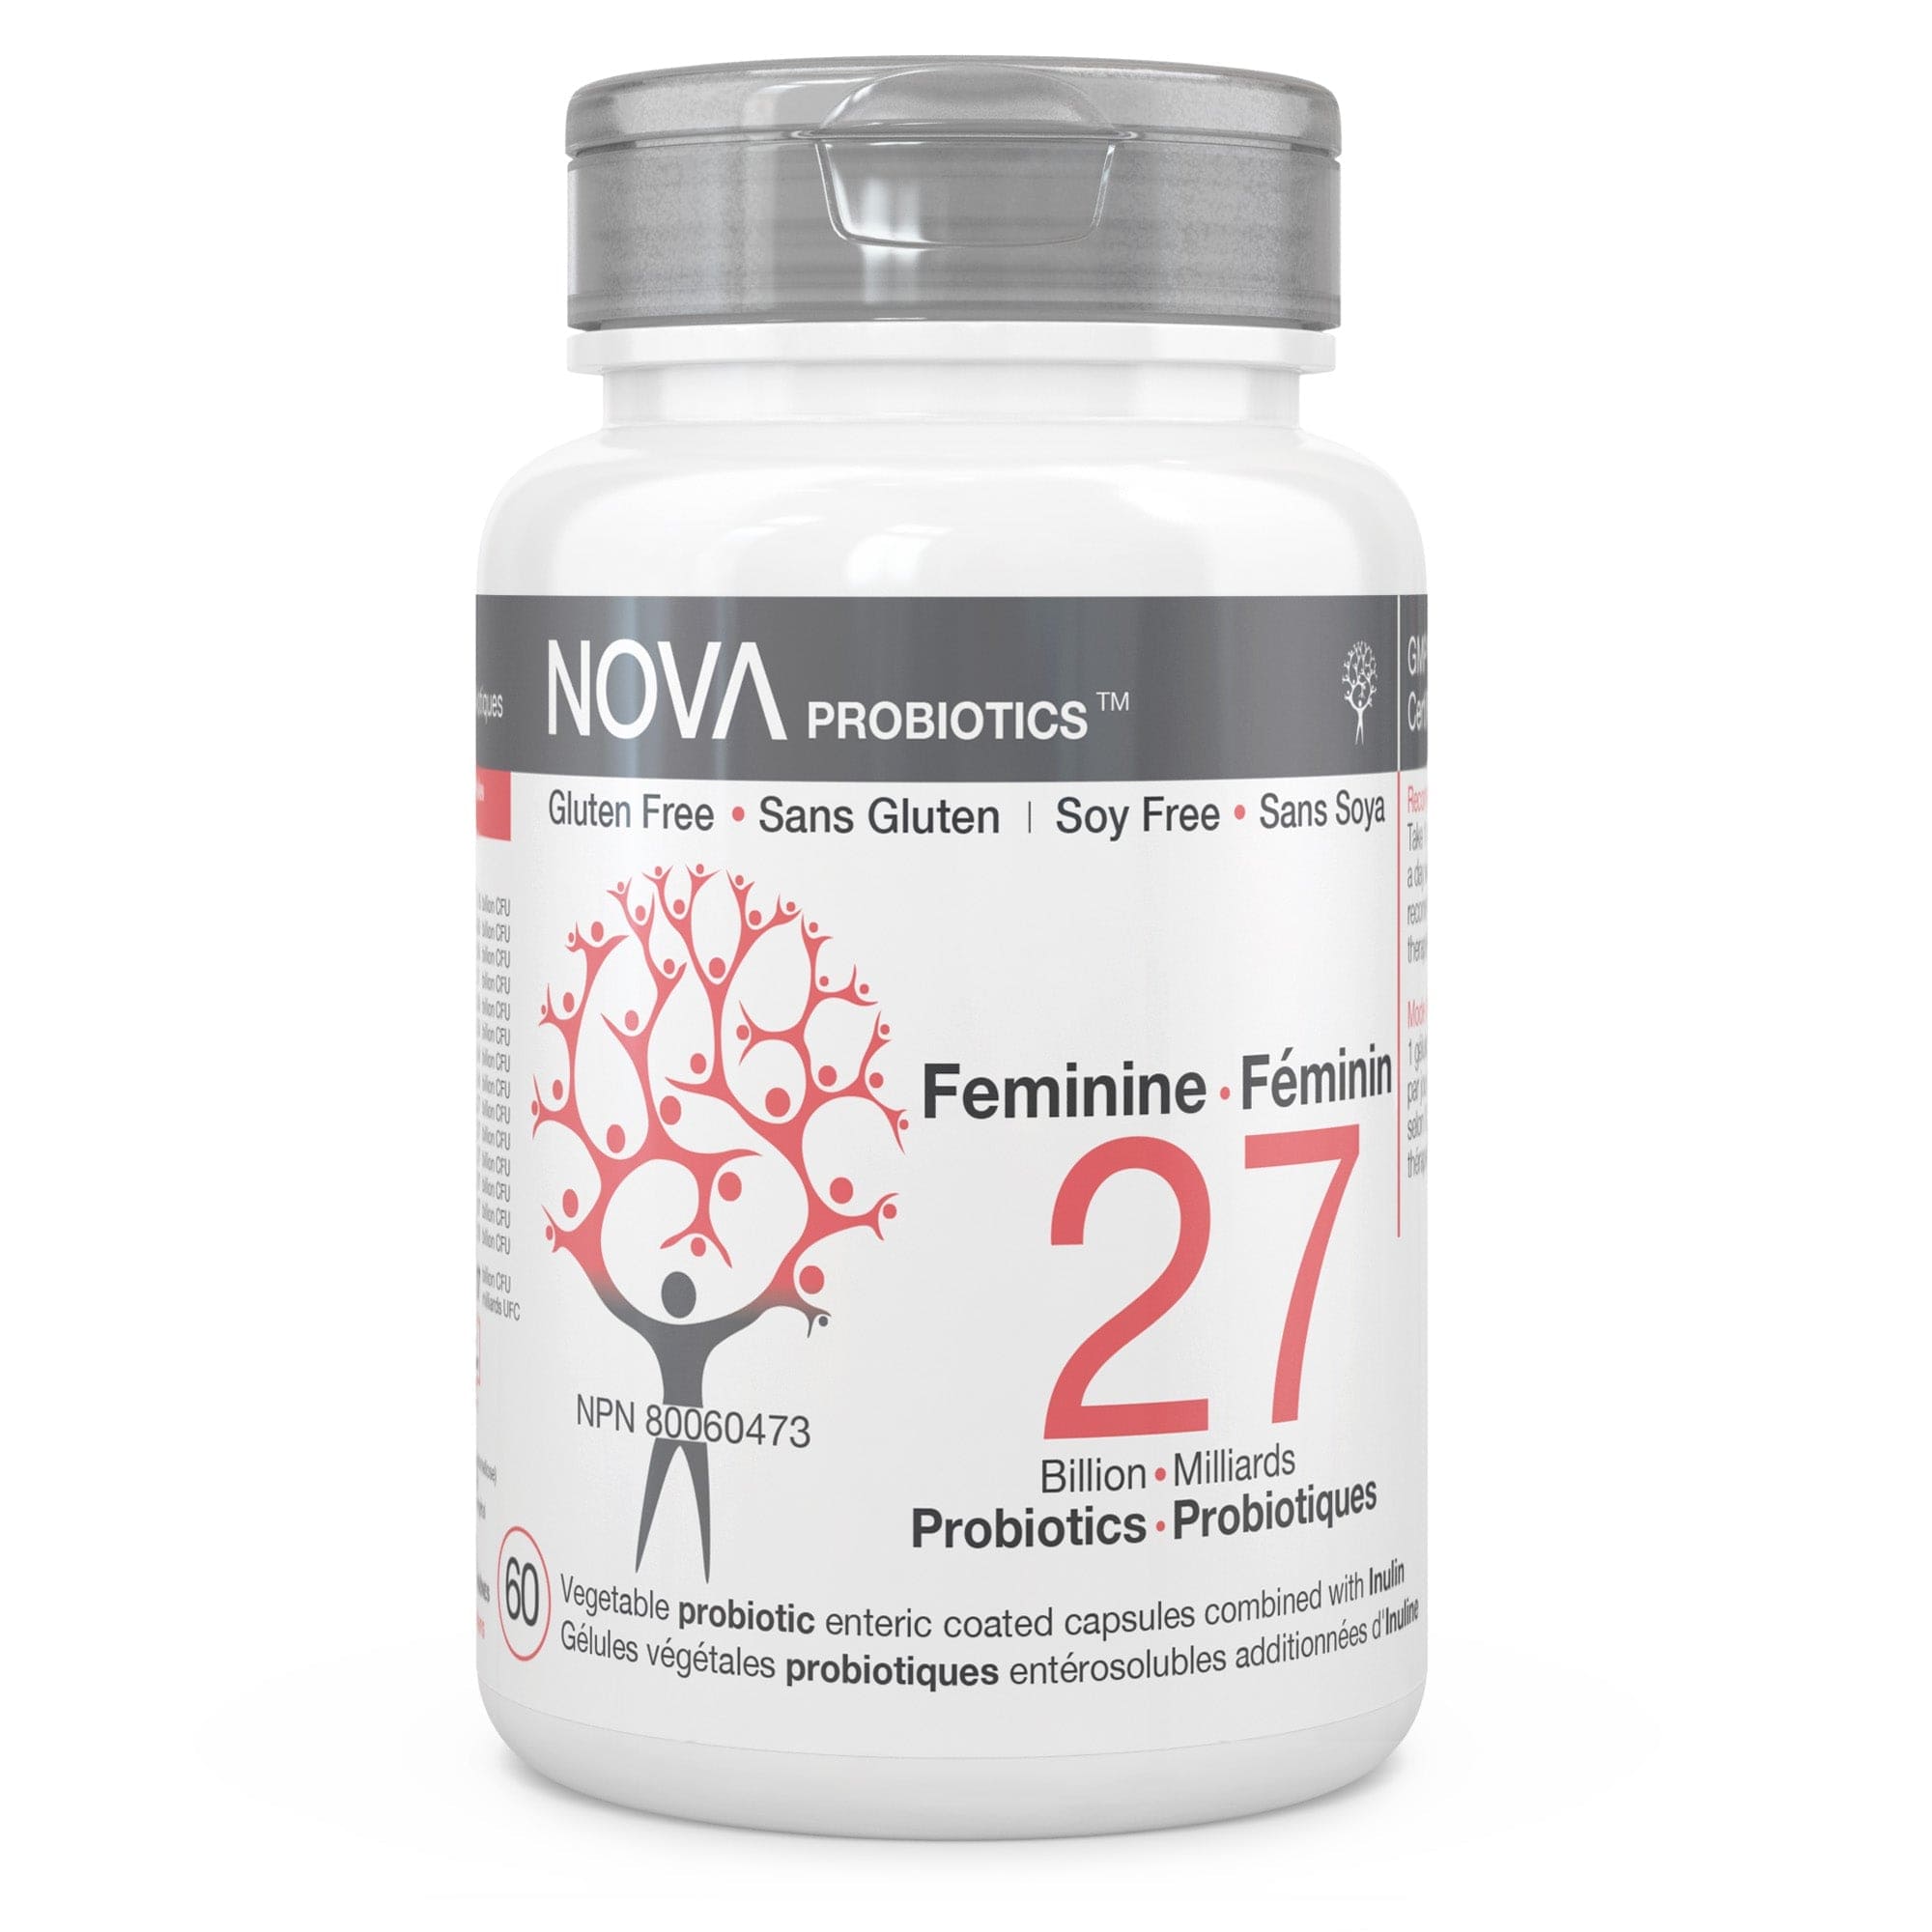 NOVA PROBIOTICS Suppléments Féminine (14 souches, 27milliards) (NPN80029525) 60caps